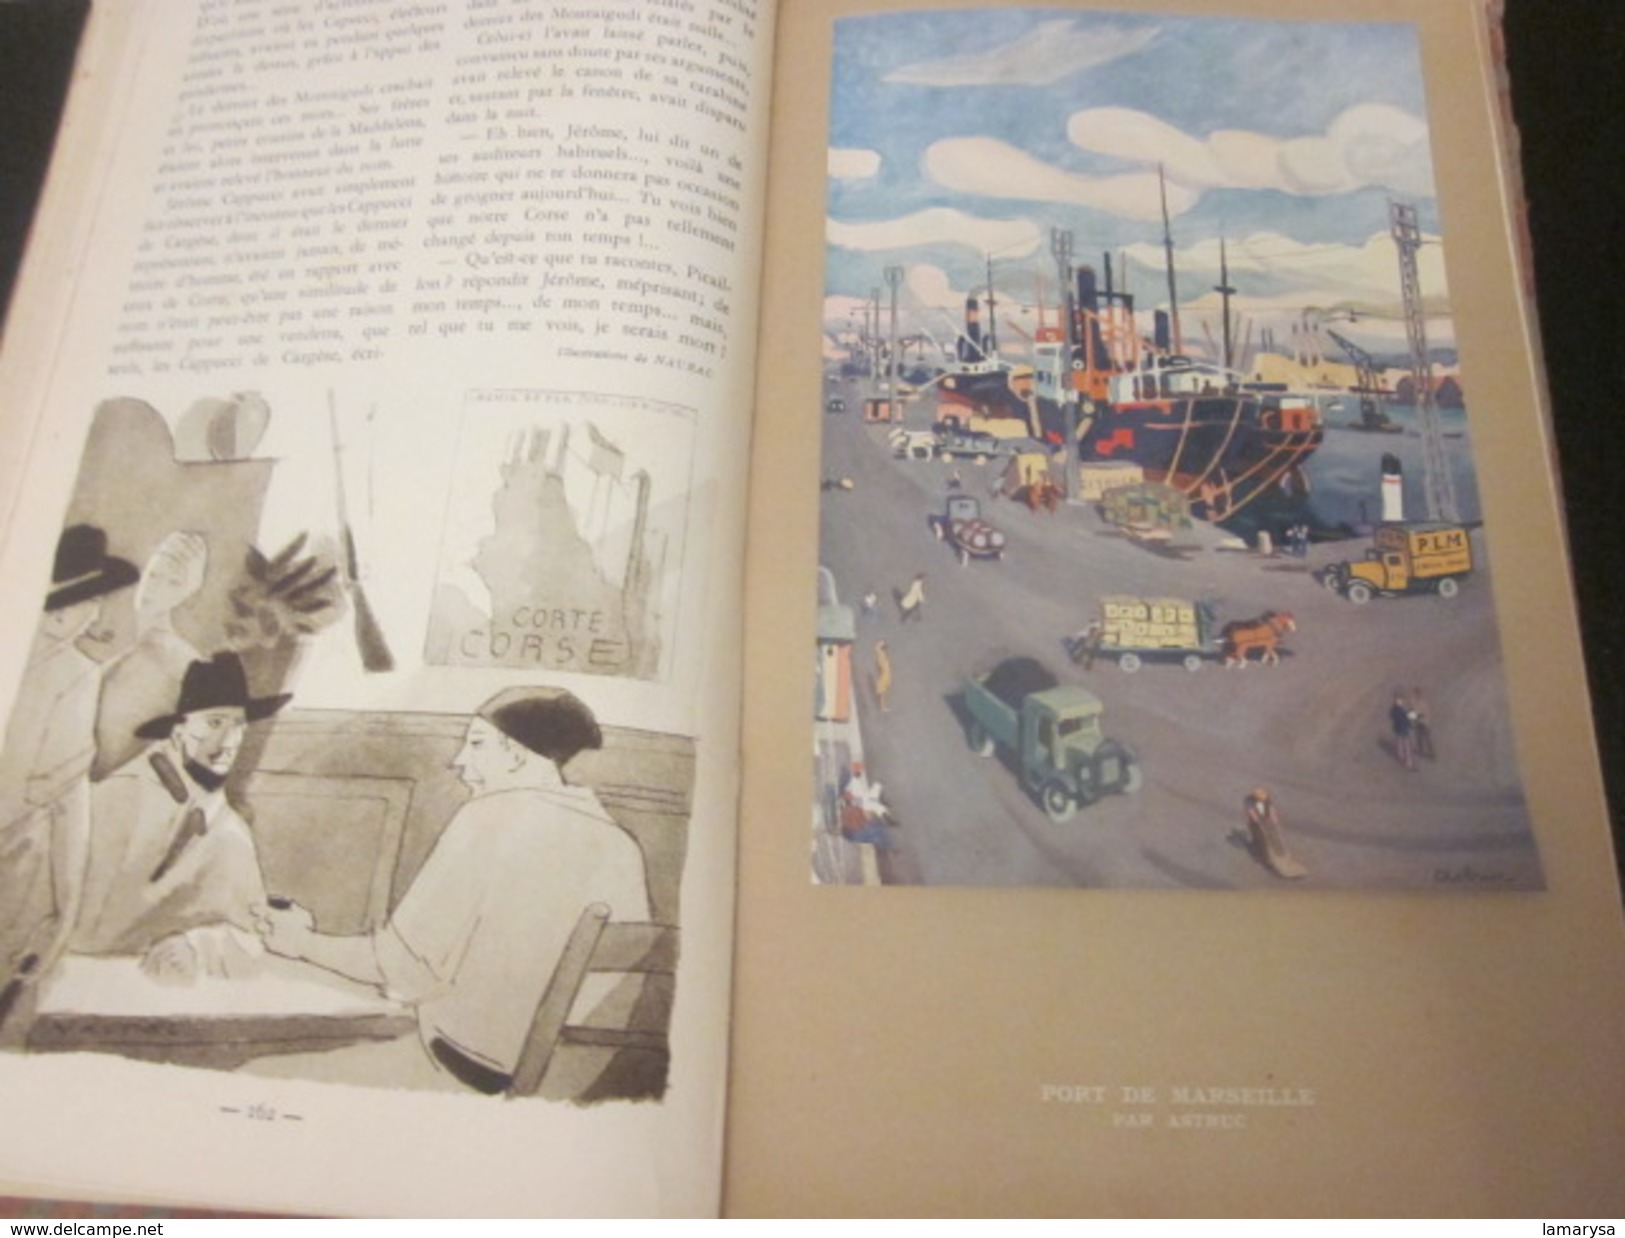 AGENDA PLM 1931-305 pages-France Paris-Corté-Corse-Alger-Tunisie-Maroc-Expo coloniale-Pub-Gravure couleur-Voir 72 Scanns